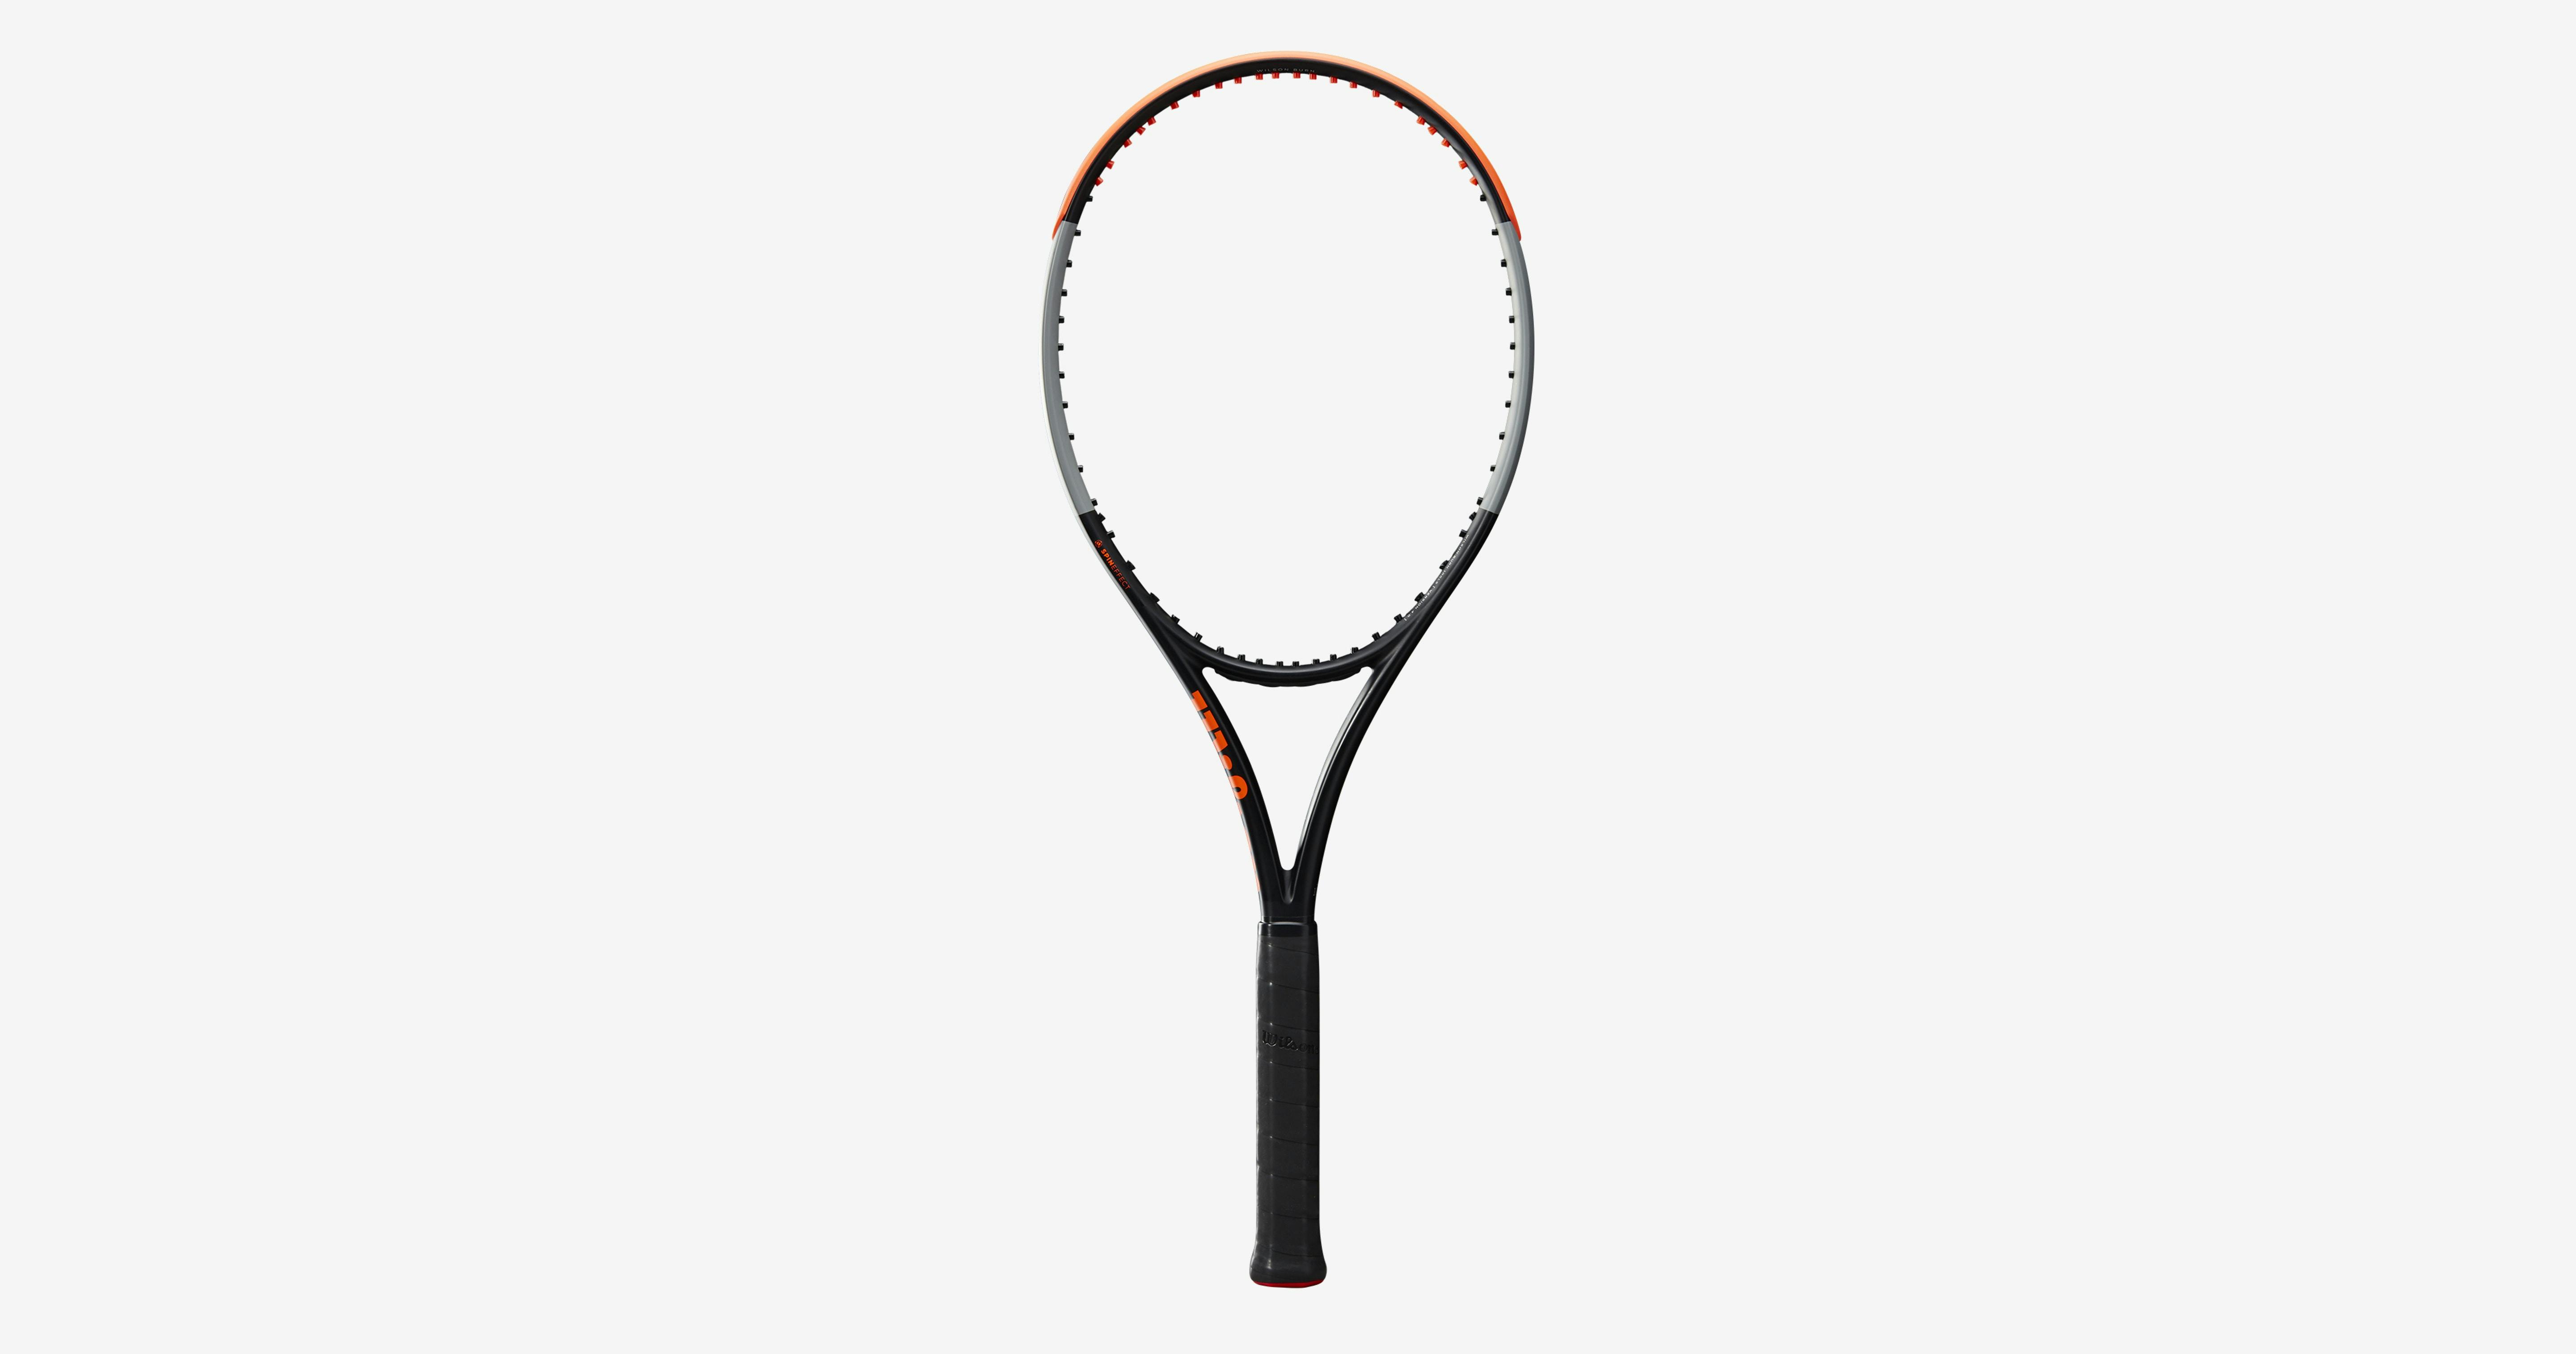 Wilson Burn 100LS V4 Racquet · Unstrung